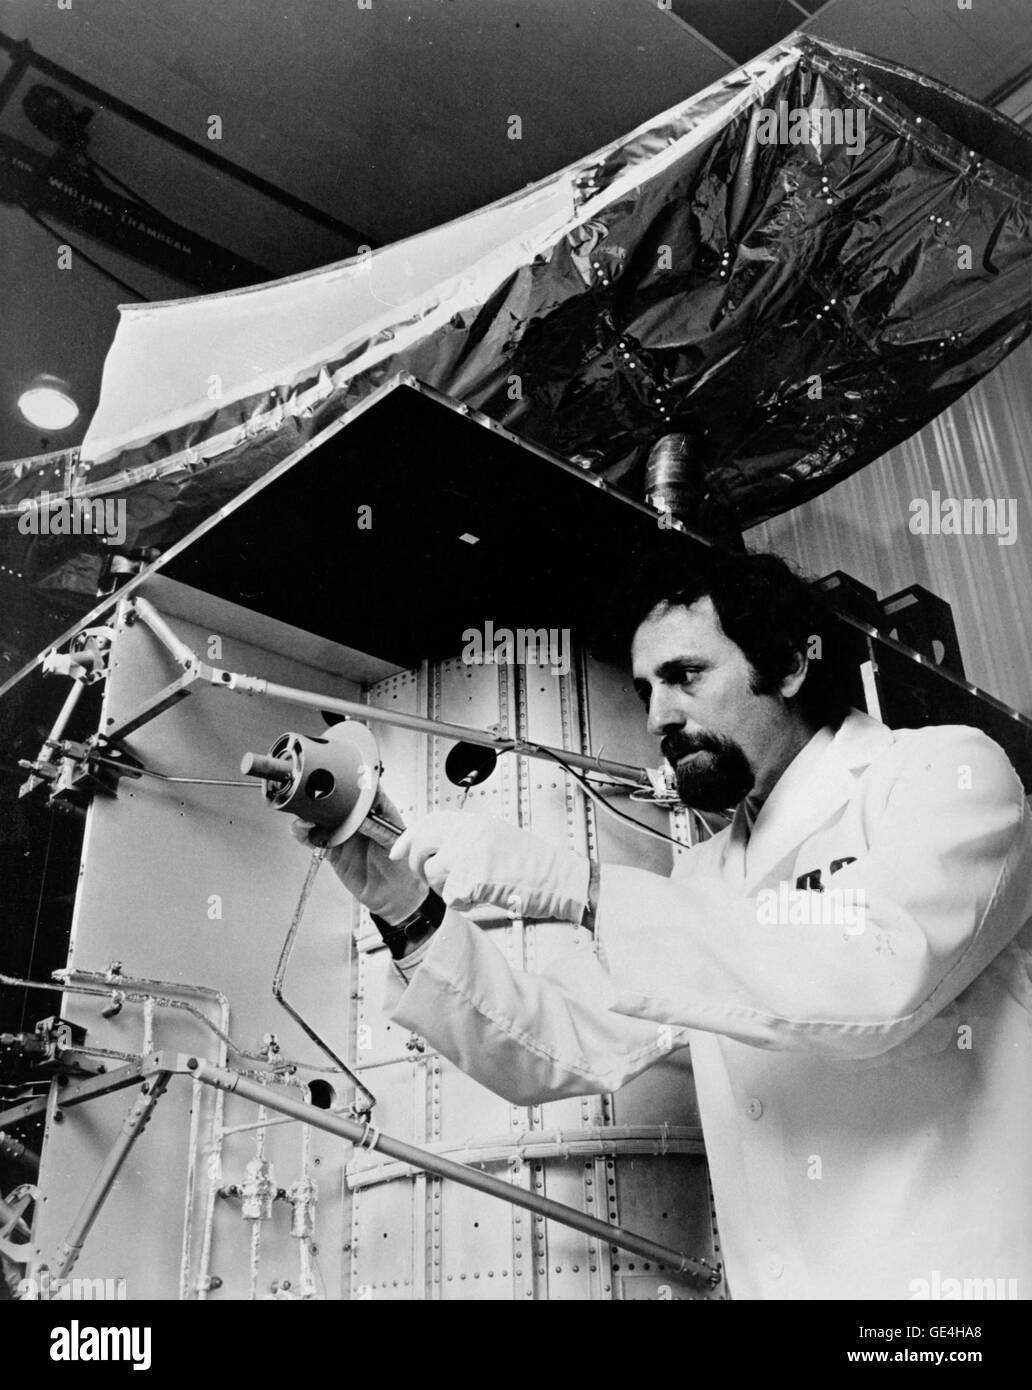 (10 décembre 1975) Ingénieur RCA, Joel Bacher, ajuste un propulseur de propulsion sur un satellite de communication. Les propulseurs ont été conçus pour permettre à l'engin spatial à maintenir une bonne maîtrise de l'altitude après qu'il avait atteint une orbite synchrone 22 000 milles sur Terre. L'illustration est un satellite Satcom communication domestique RCA satellite qui a été lancé le 13 décembre 1975. Le satellite a été construit par RCA Global Communication, Inc. et RCA Alaska Communications, Inc. Ce satellite de communication intérieure a stimulé l'industrie de la télévision par câble à des sommets sans précédent avec l'aide d'une société kn Banque D'Images